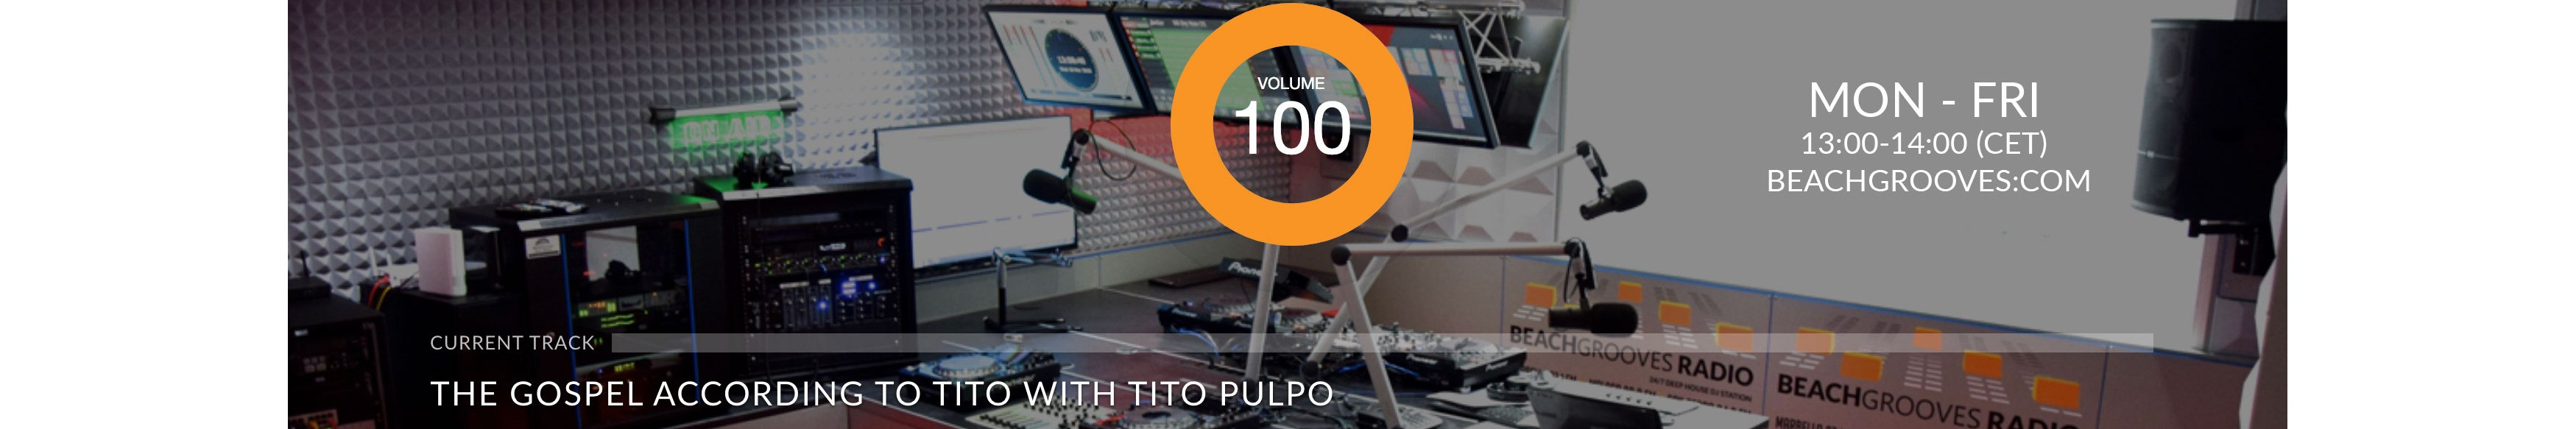 DJ Tito Pulpo